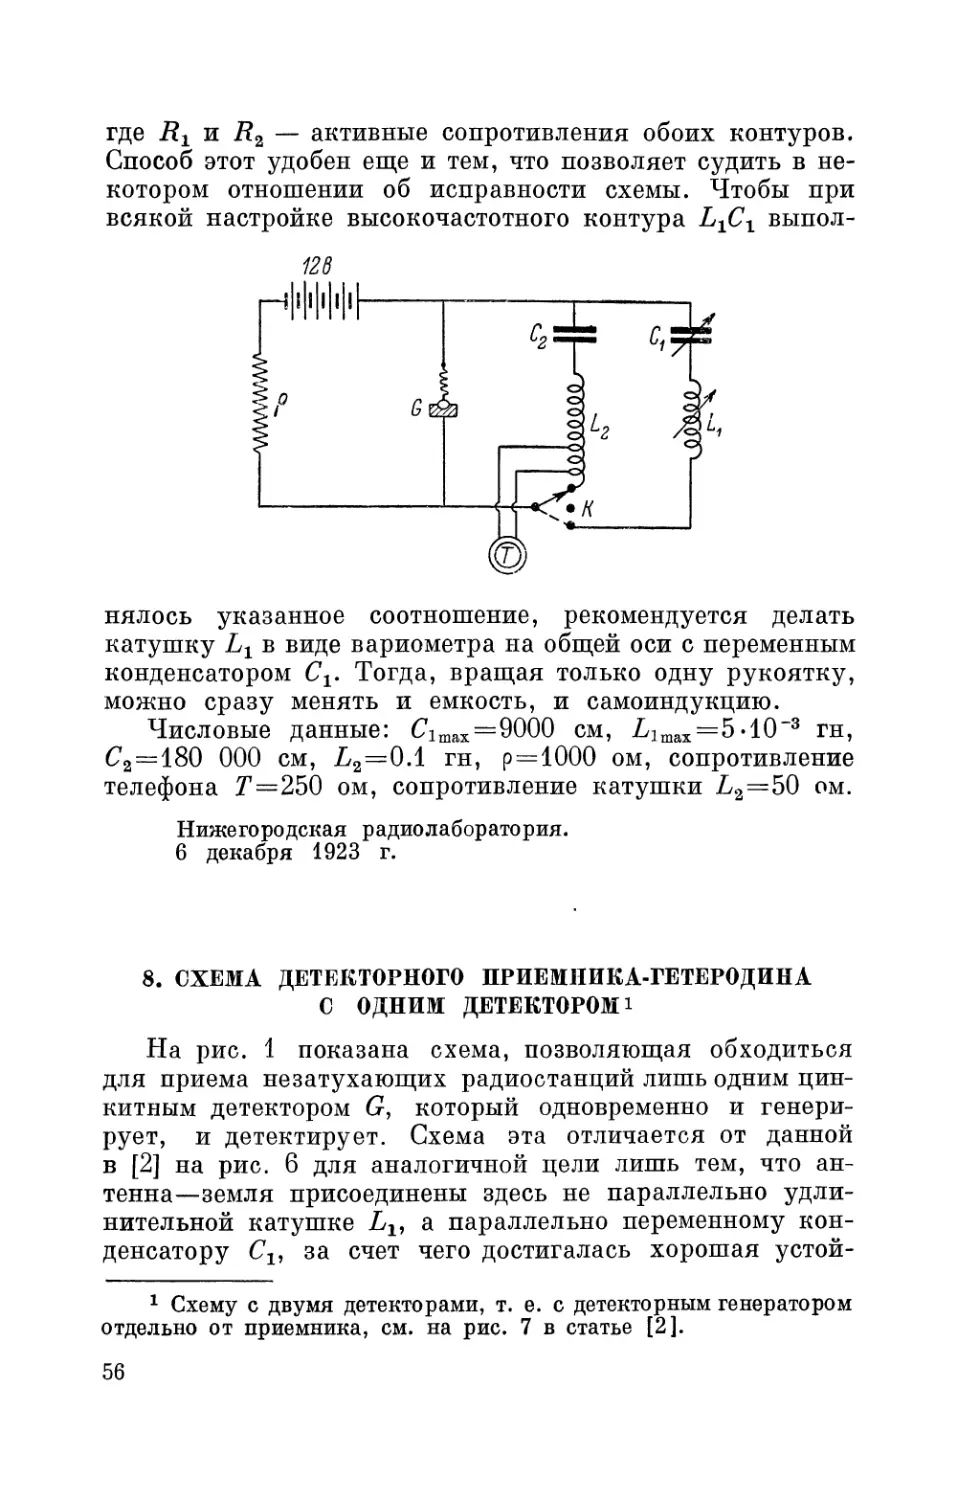 8. Схема детекторного приемника-гетеродина с одним детектором